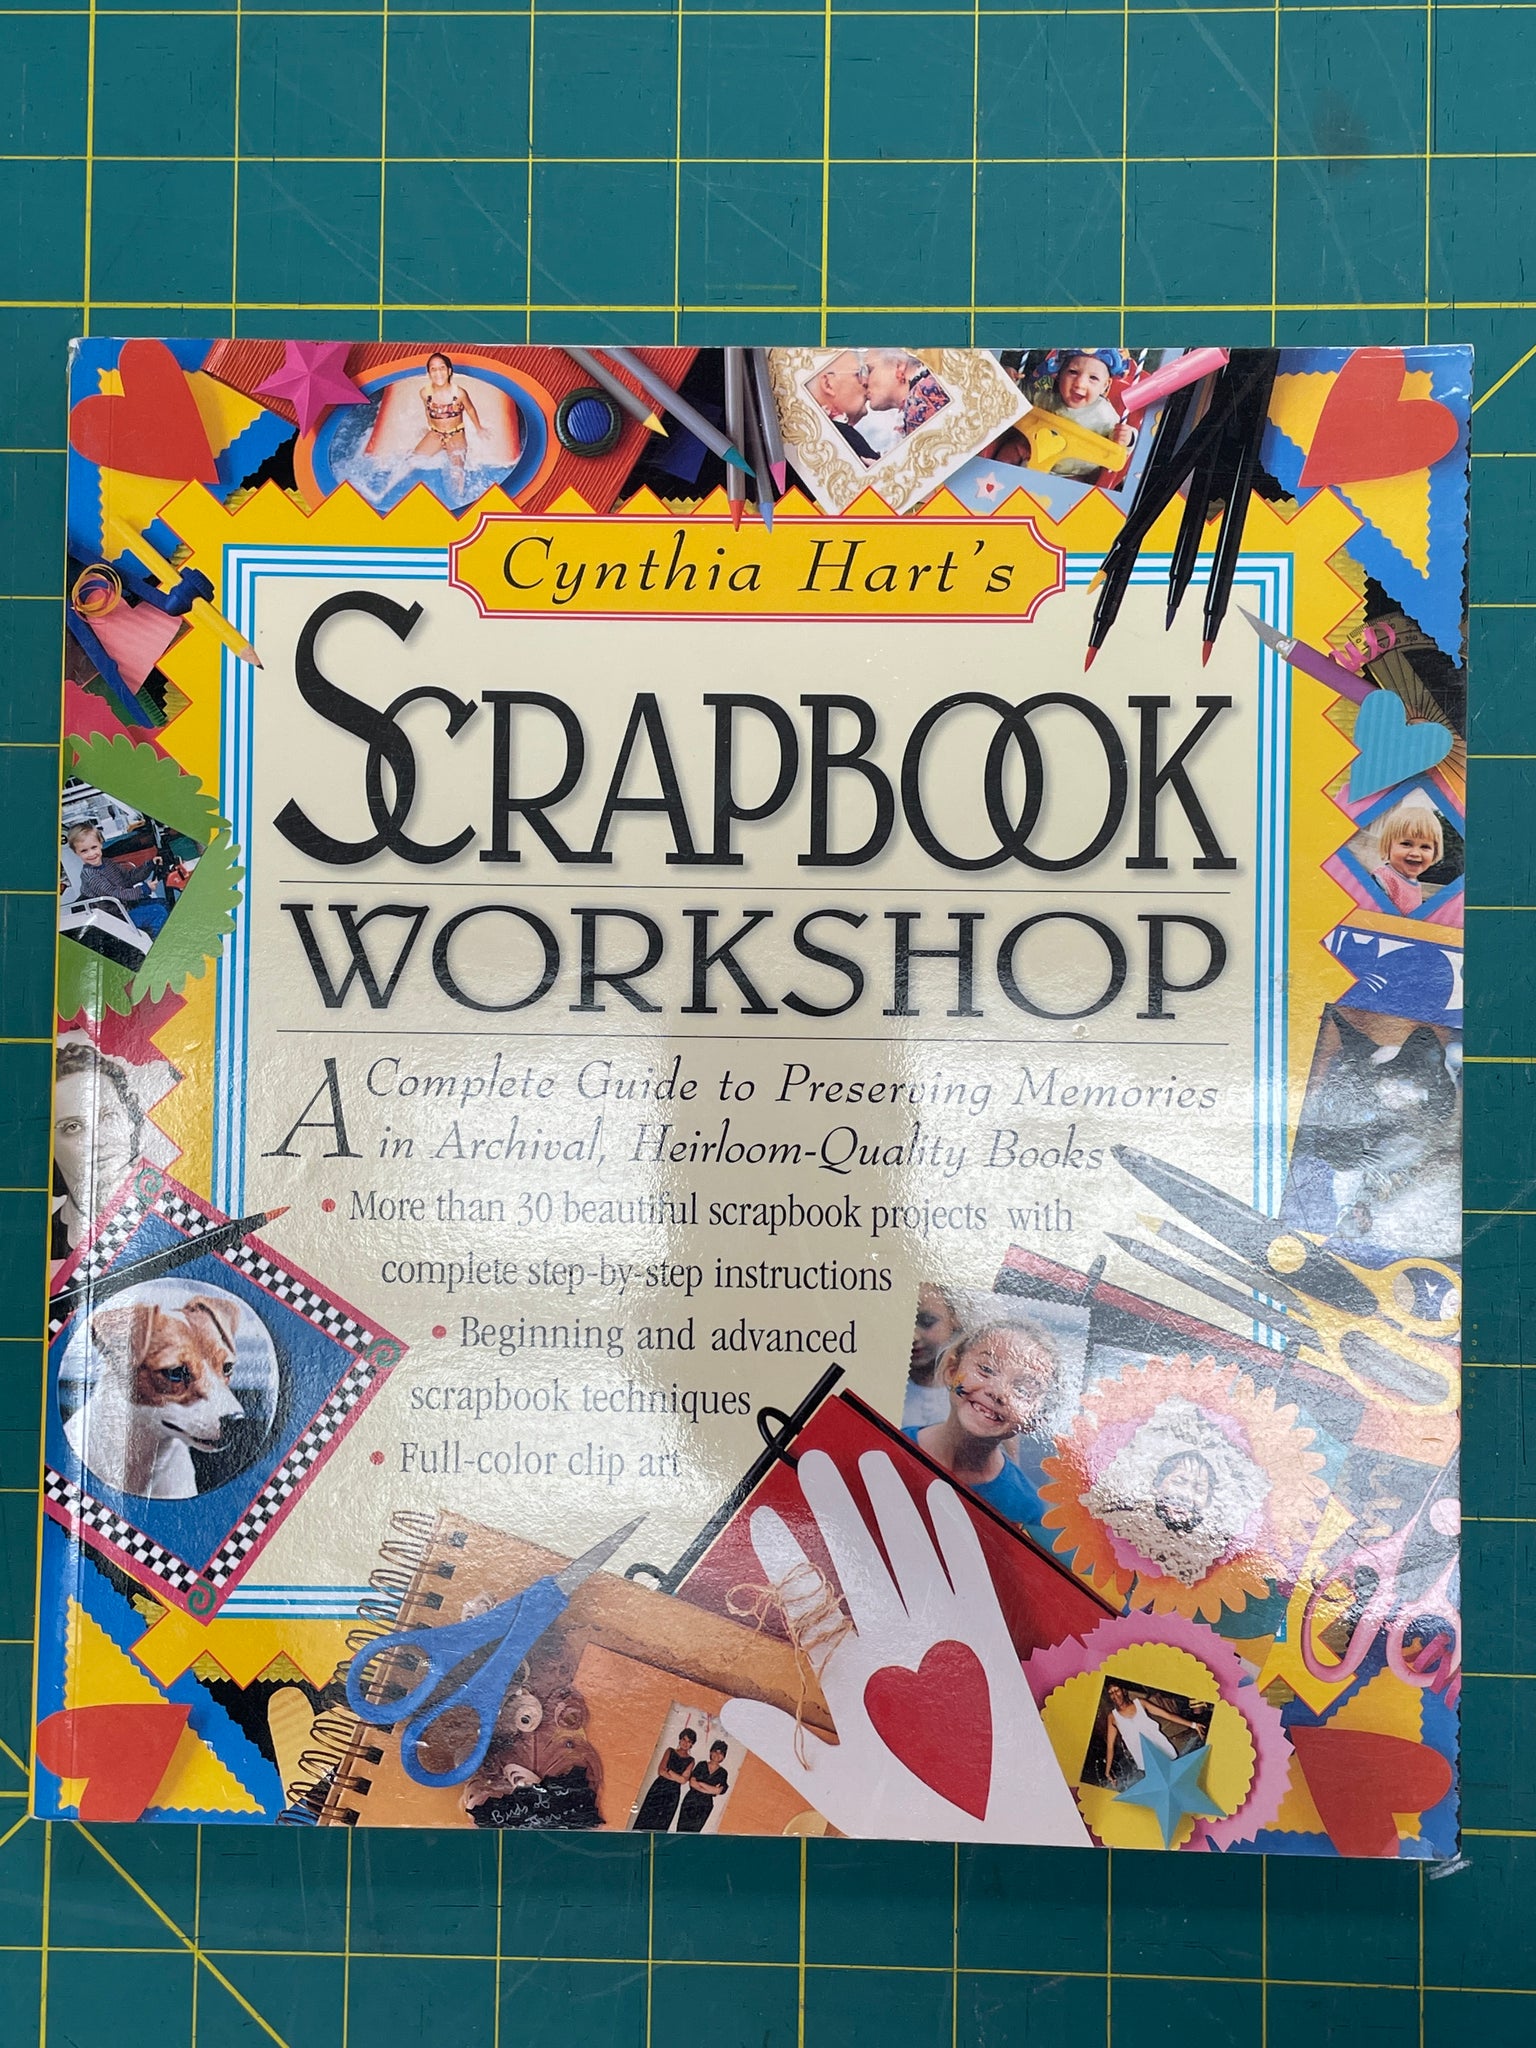 1998 Scrapbooking Book: "Scrapbook Workshop"